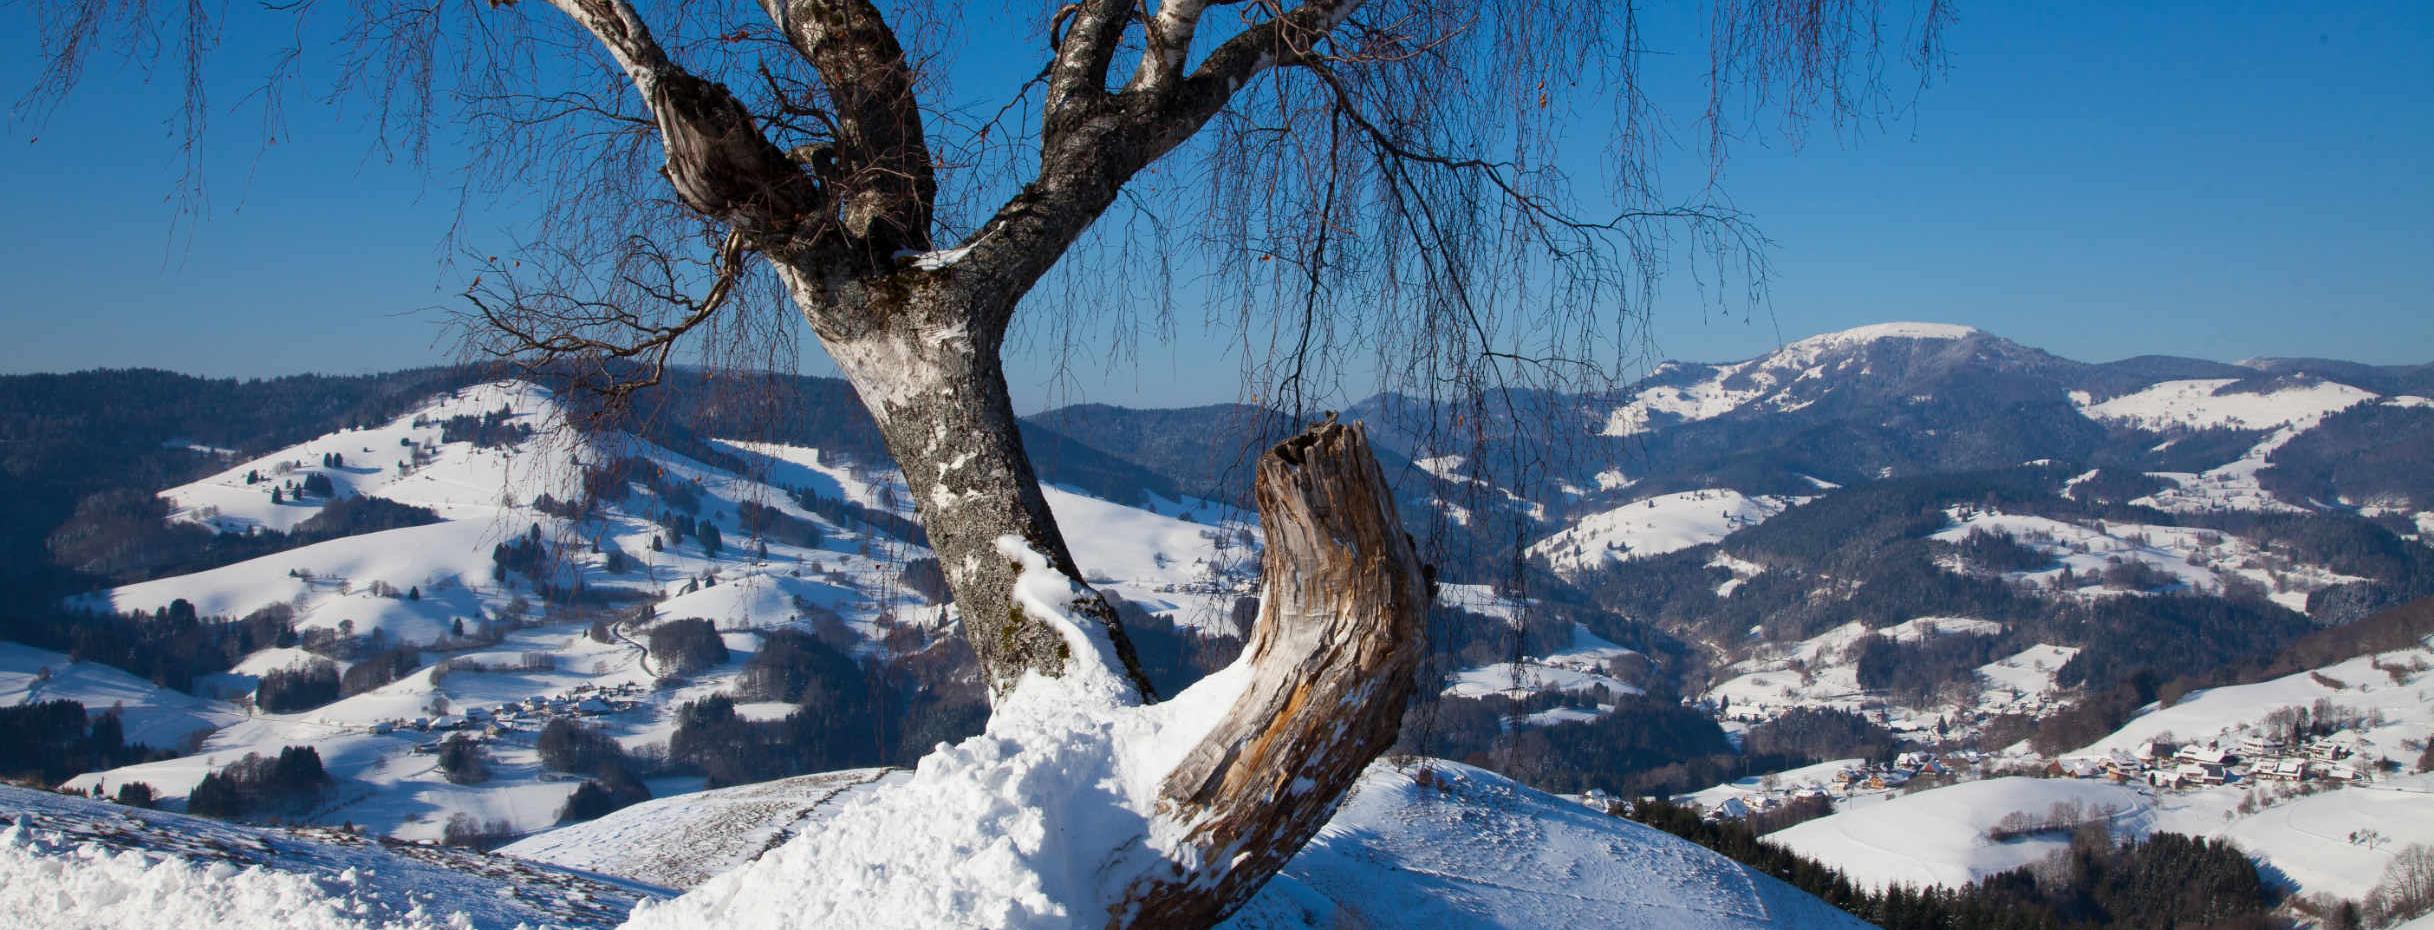 Biosphärengebiet Schwarzwald: Blick zum Belchen im Winter